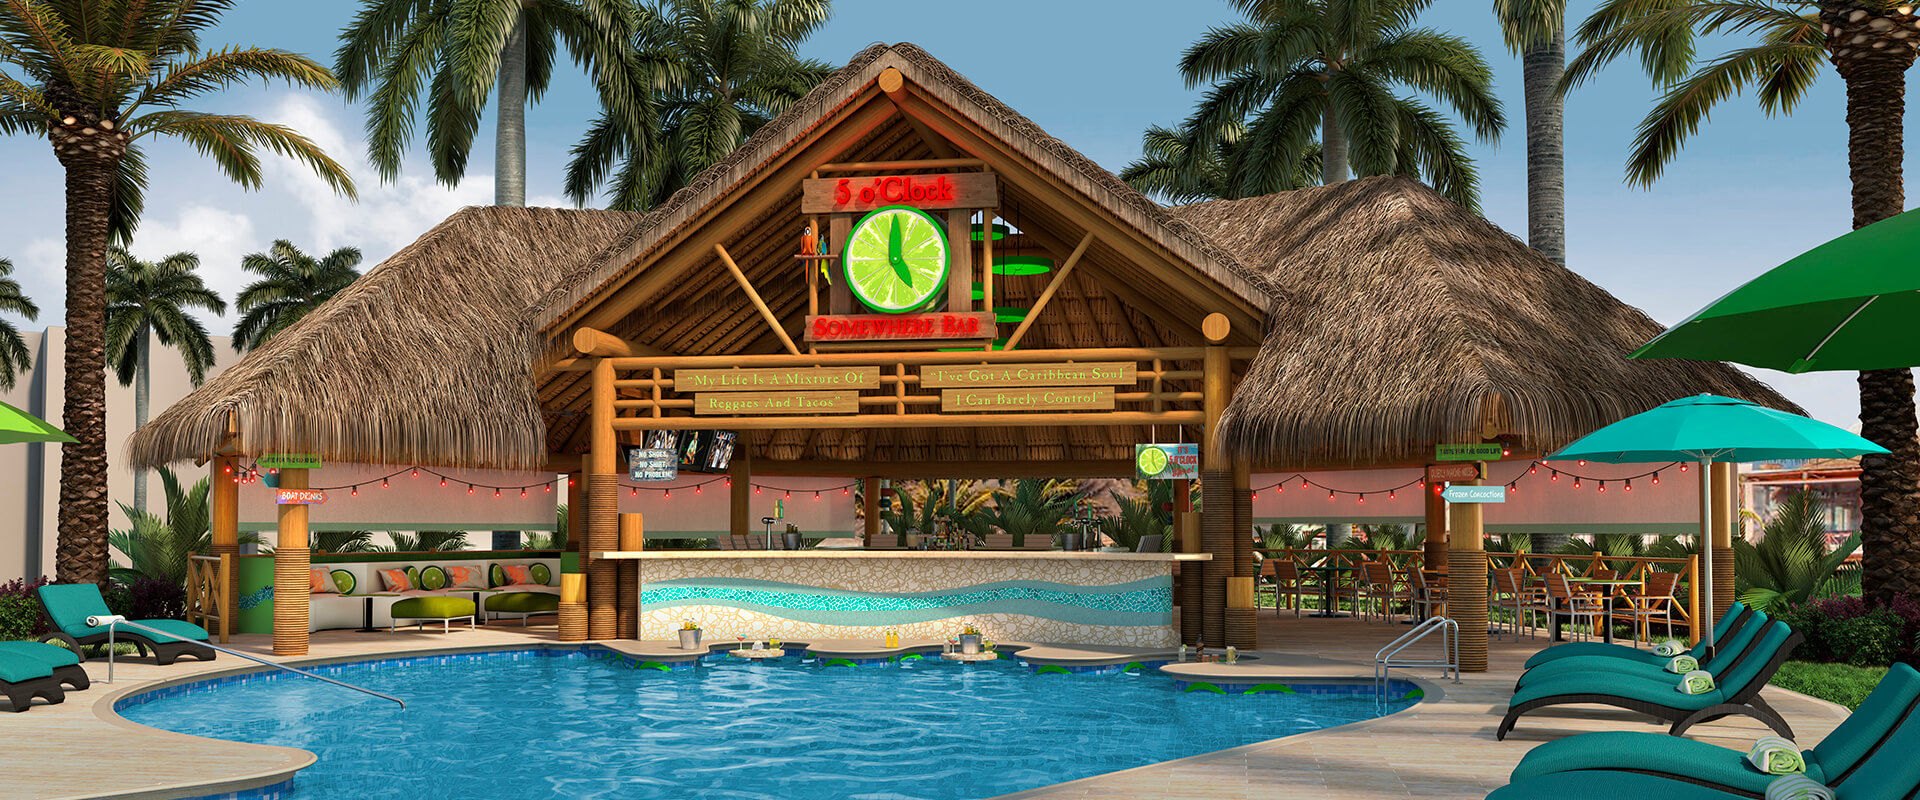 Margariatville reserve Riviera Cancun Destination Wedding Resort